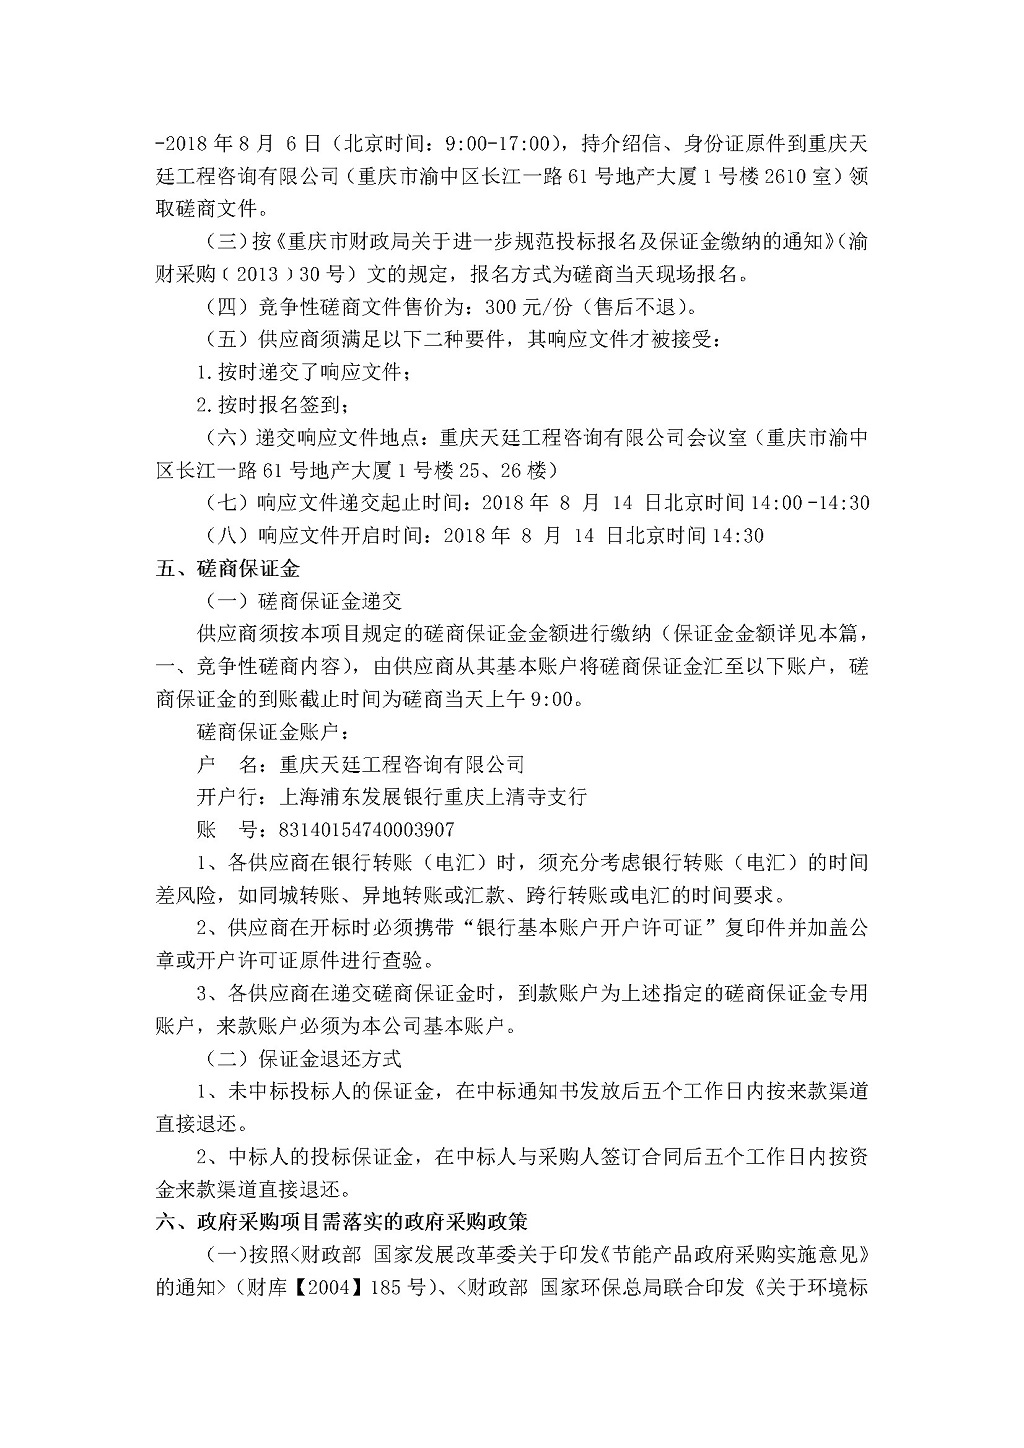 20180802b重庆市气象信息与技术保障中心数据中心机房消防系统维保服务采购邀请书-苏怀波2.jpg